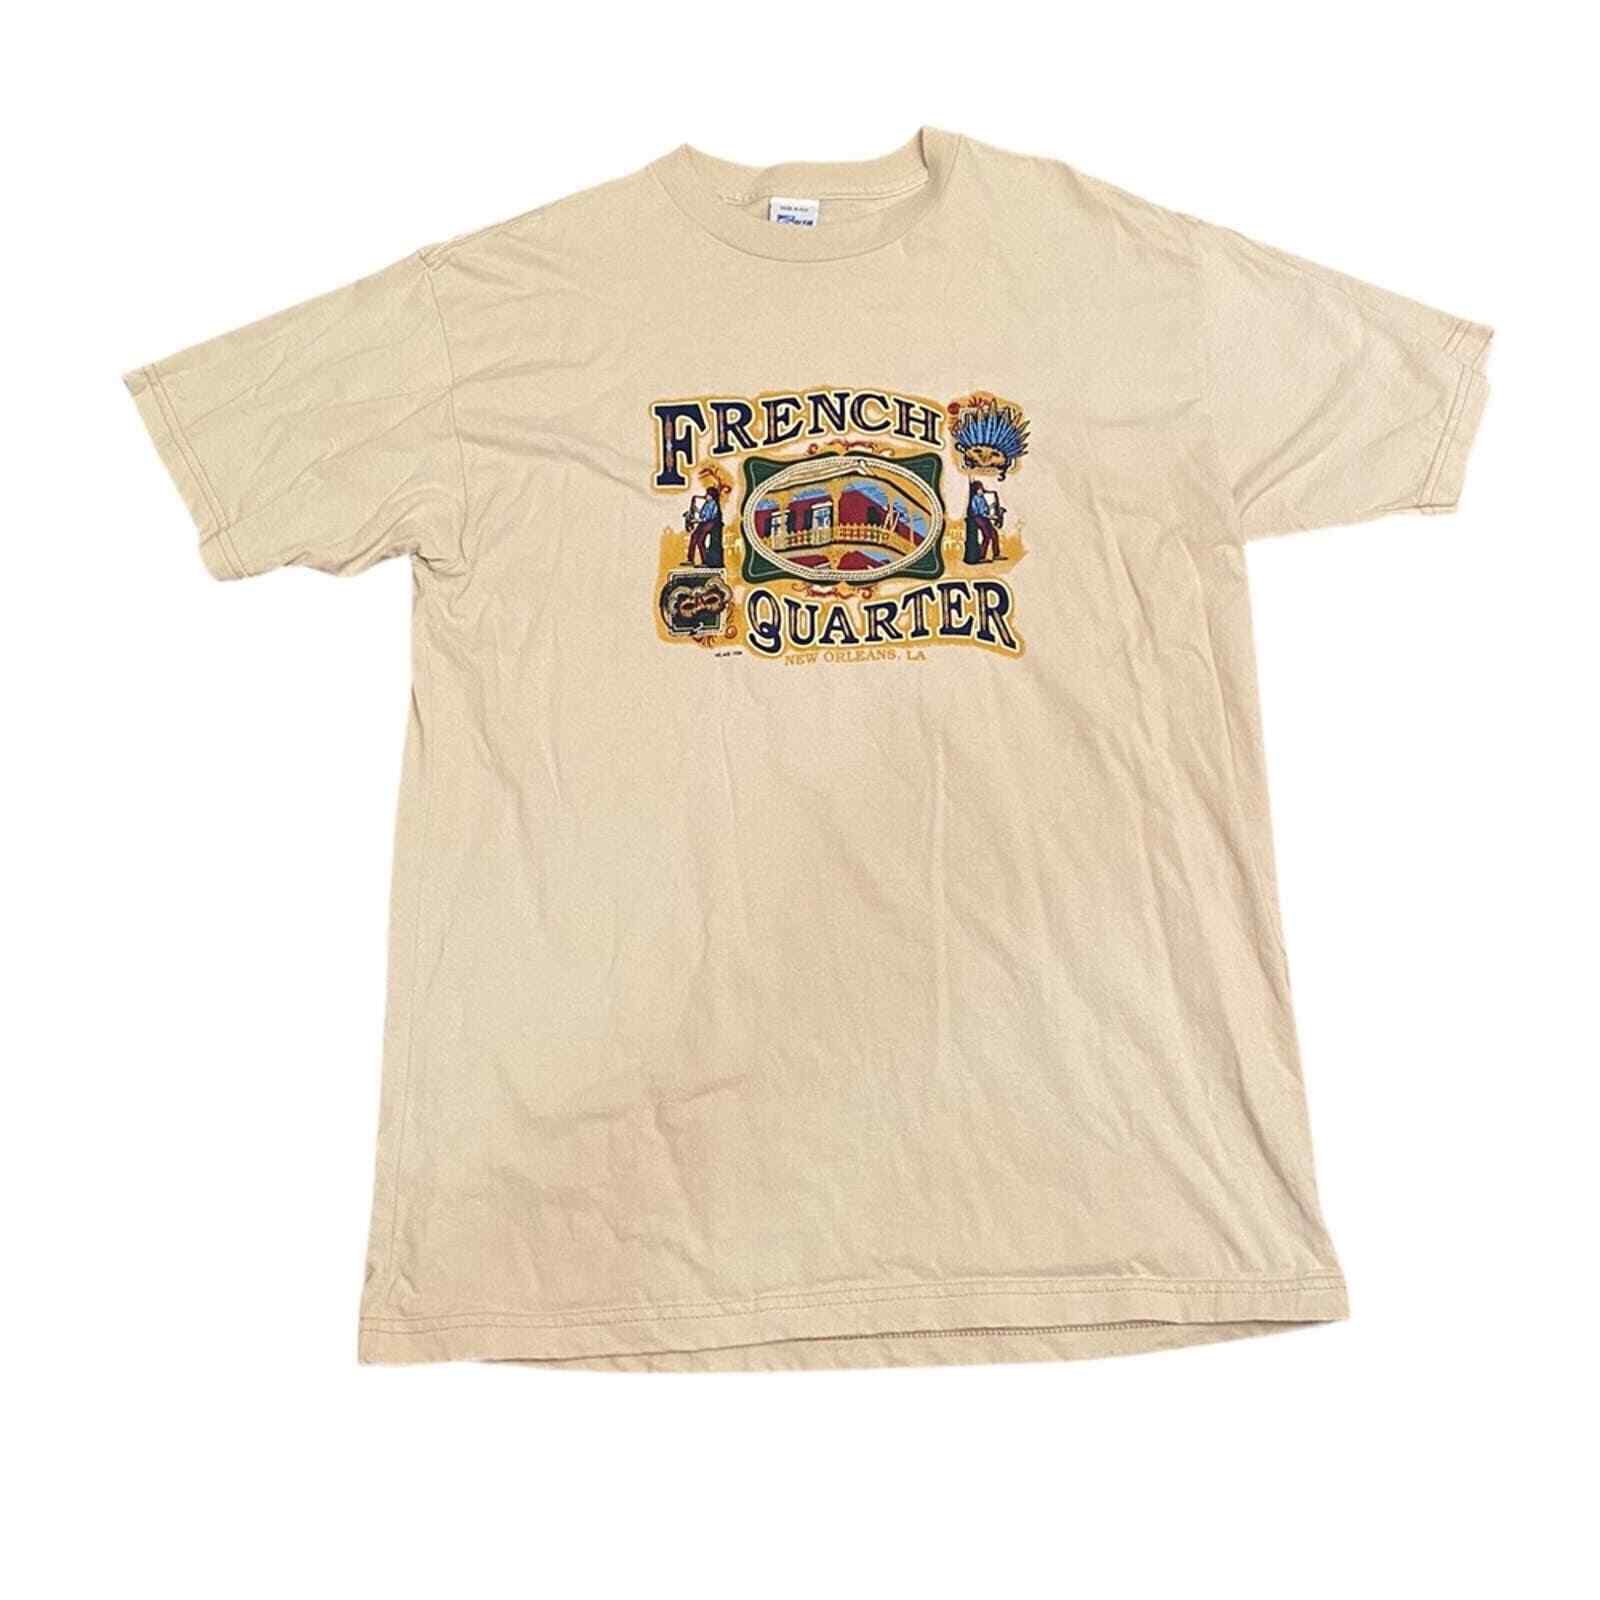 Vintage New Orleans French Quarter Salem T-shirt Large 100% cotton #80s #90s